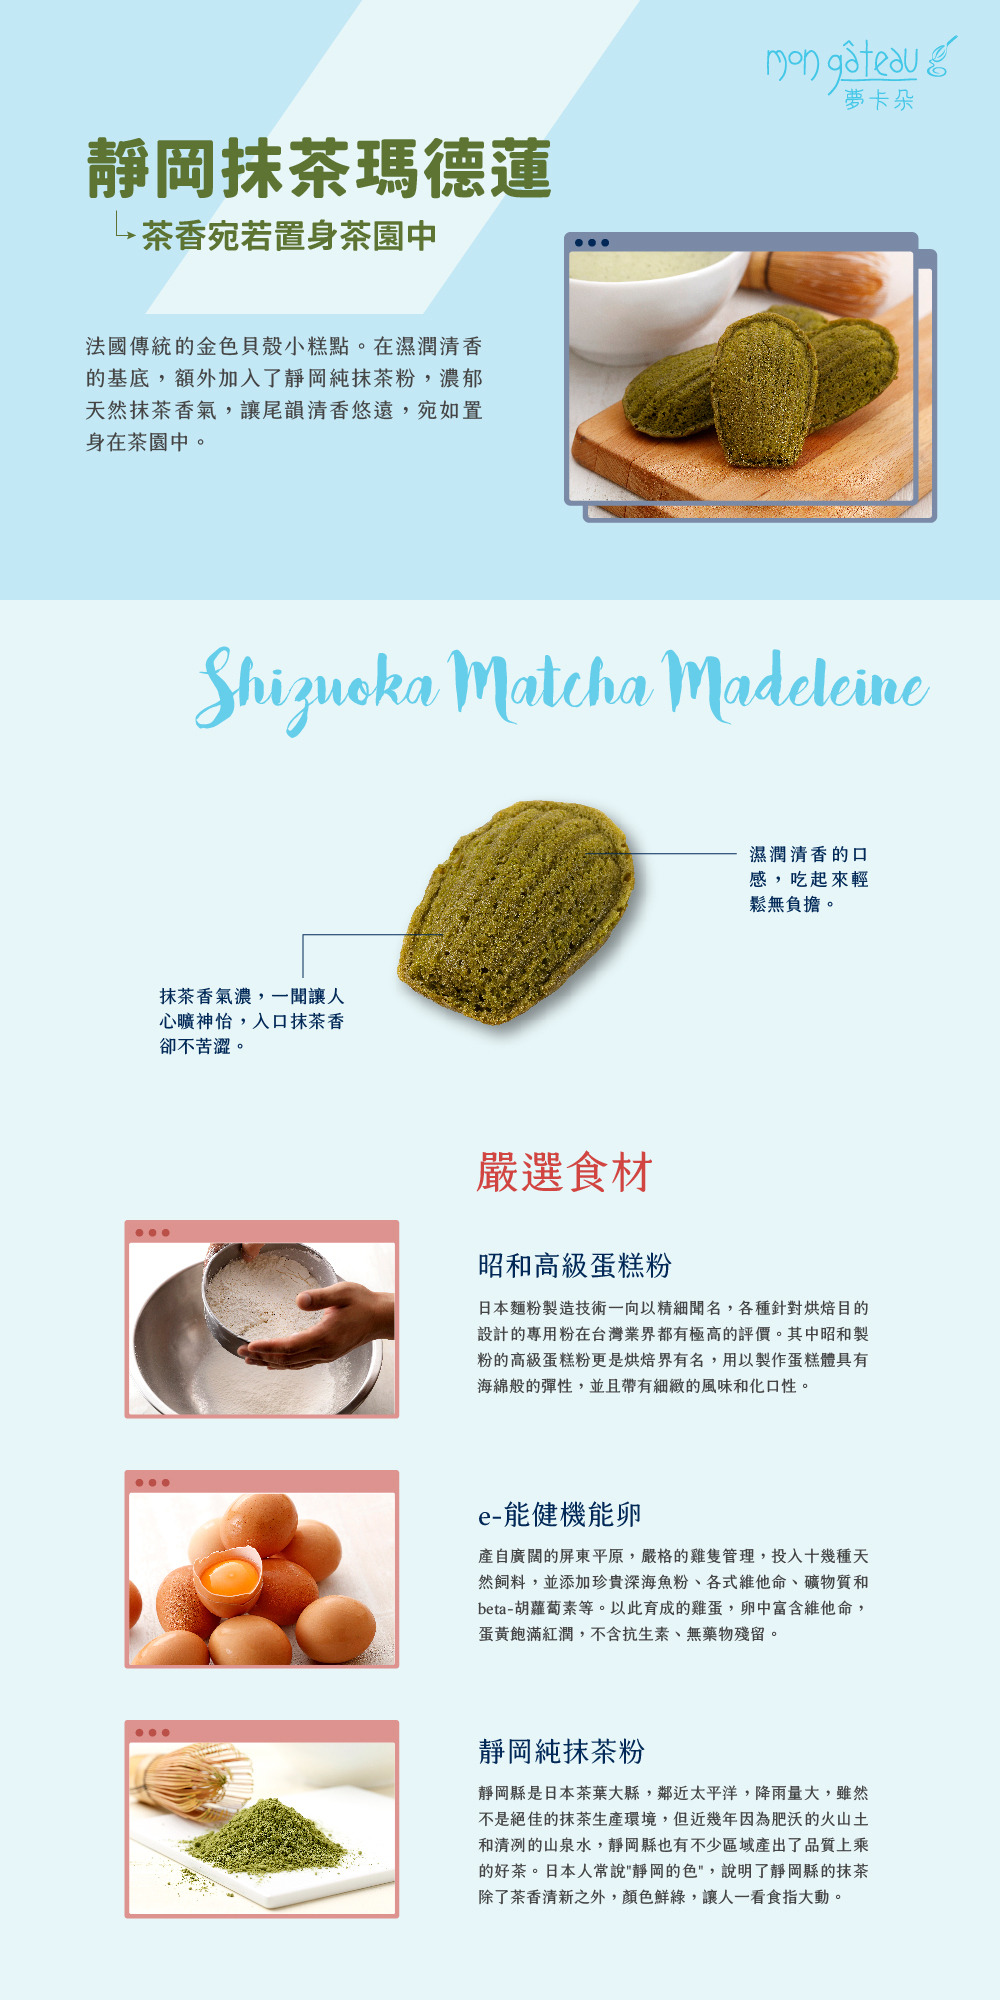 靜岡抹茶瑪德蓮產品說明